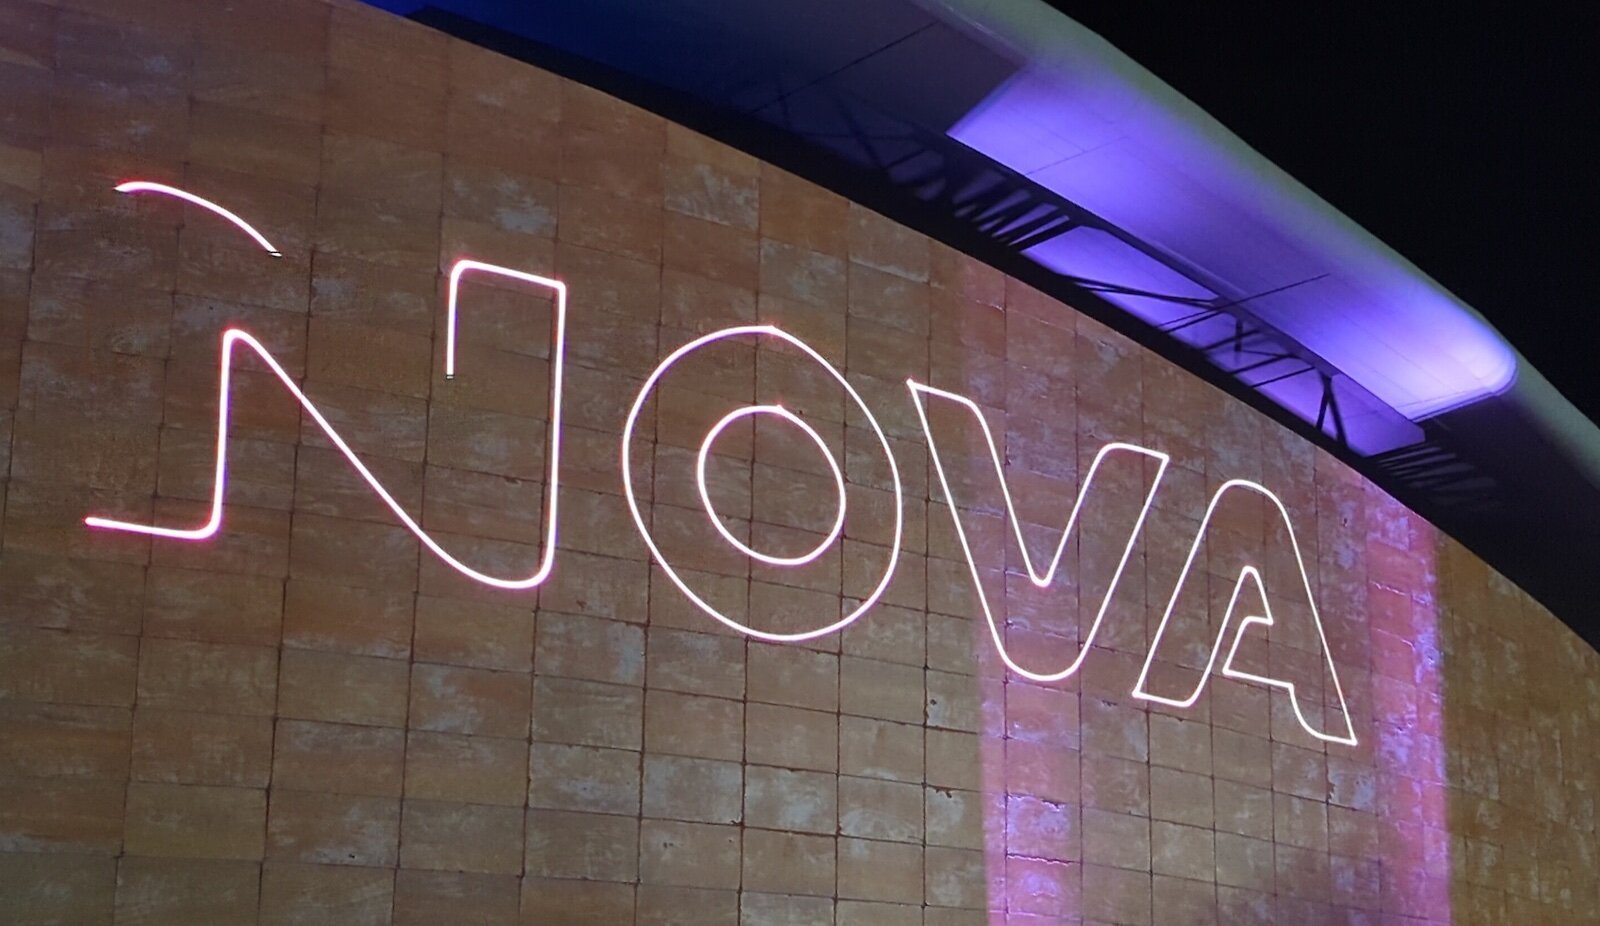 Σε νέα αλλαγή της διαφημιστικής της καμπάνιας προχωρά η Nova μετά από καταγγελίες